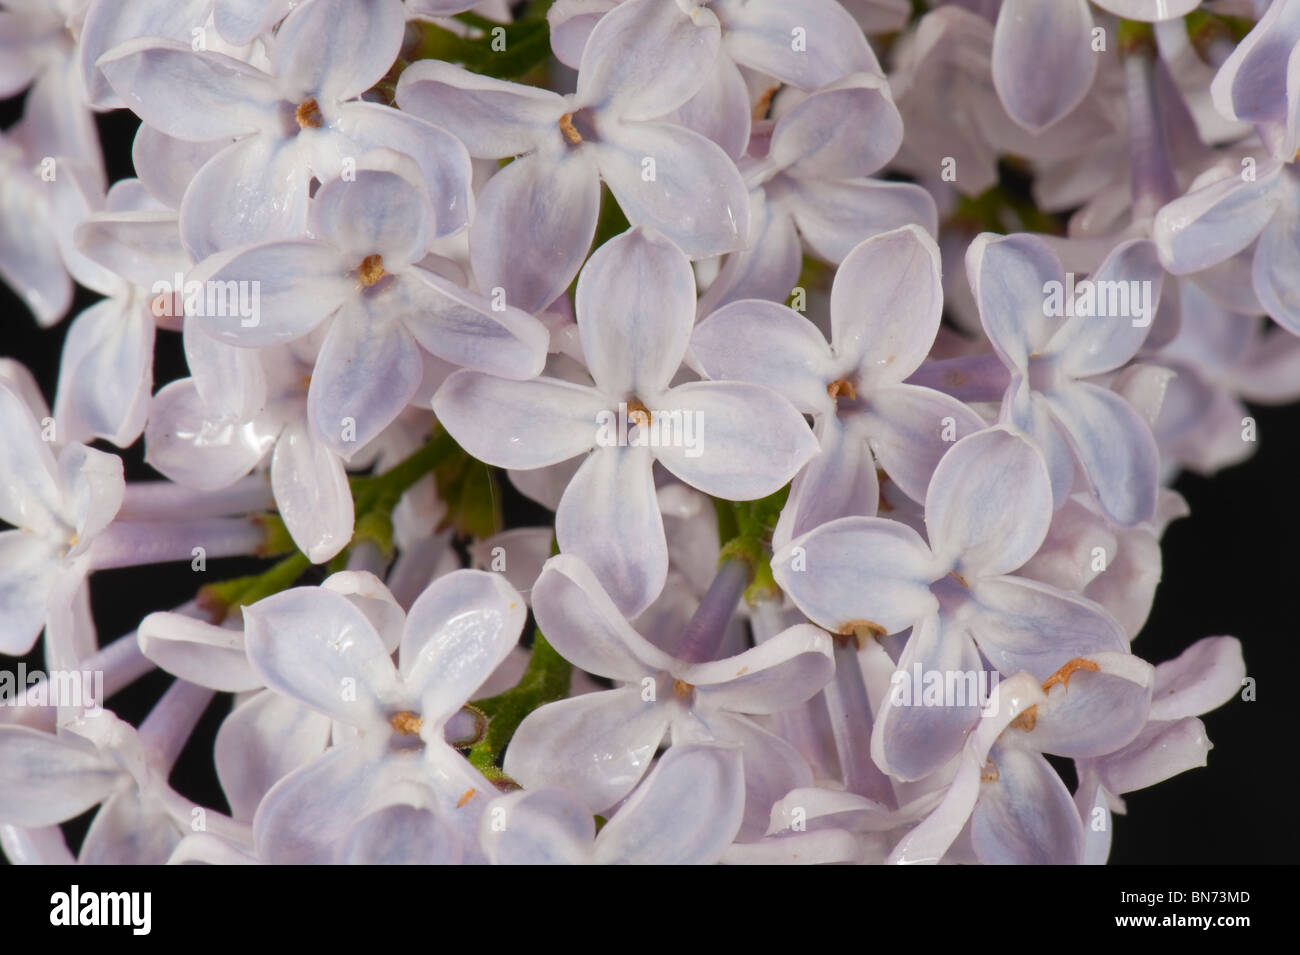 Le lilas (Syringa vulgaris) bouquets de lilas sur un fond noir Banque D'Images